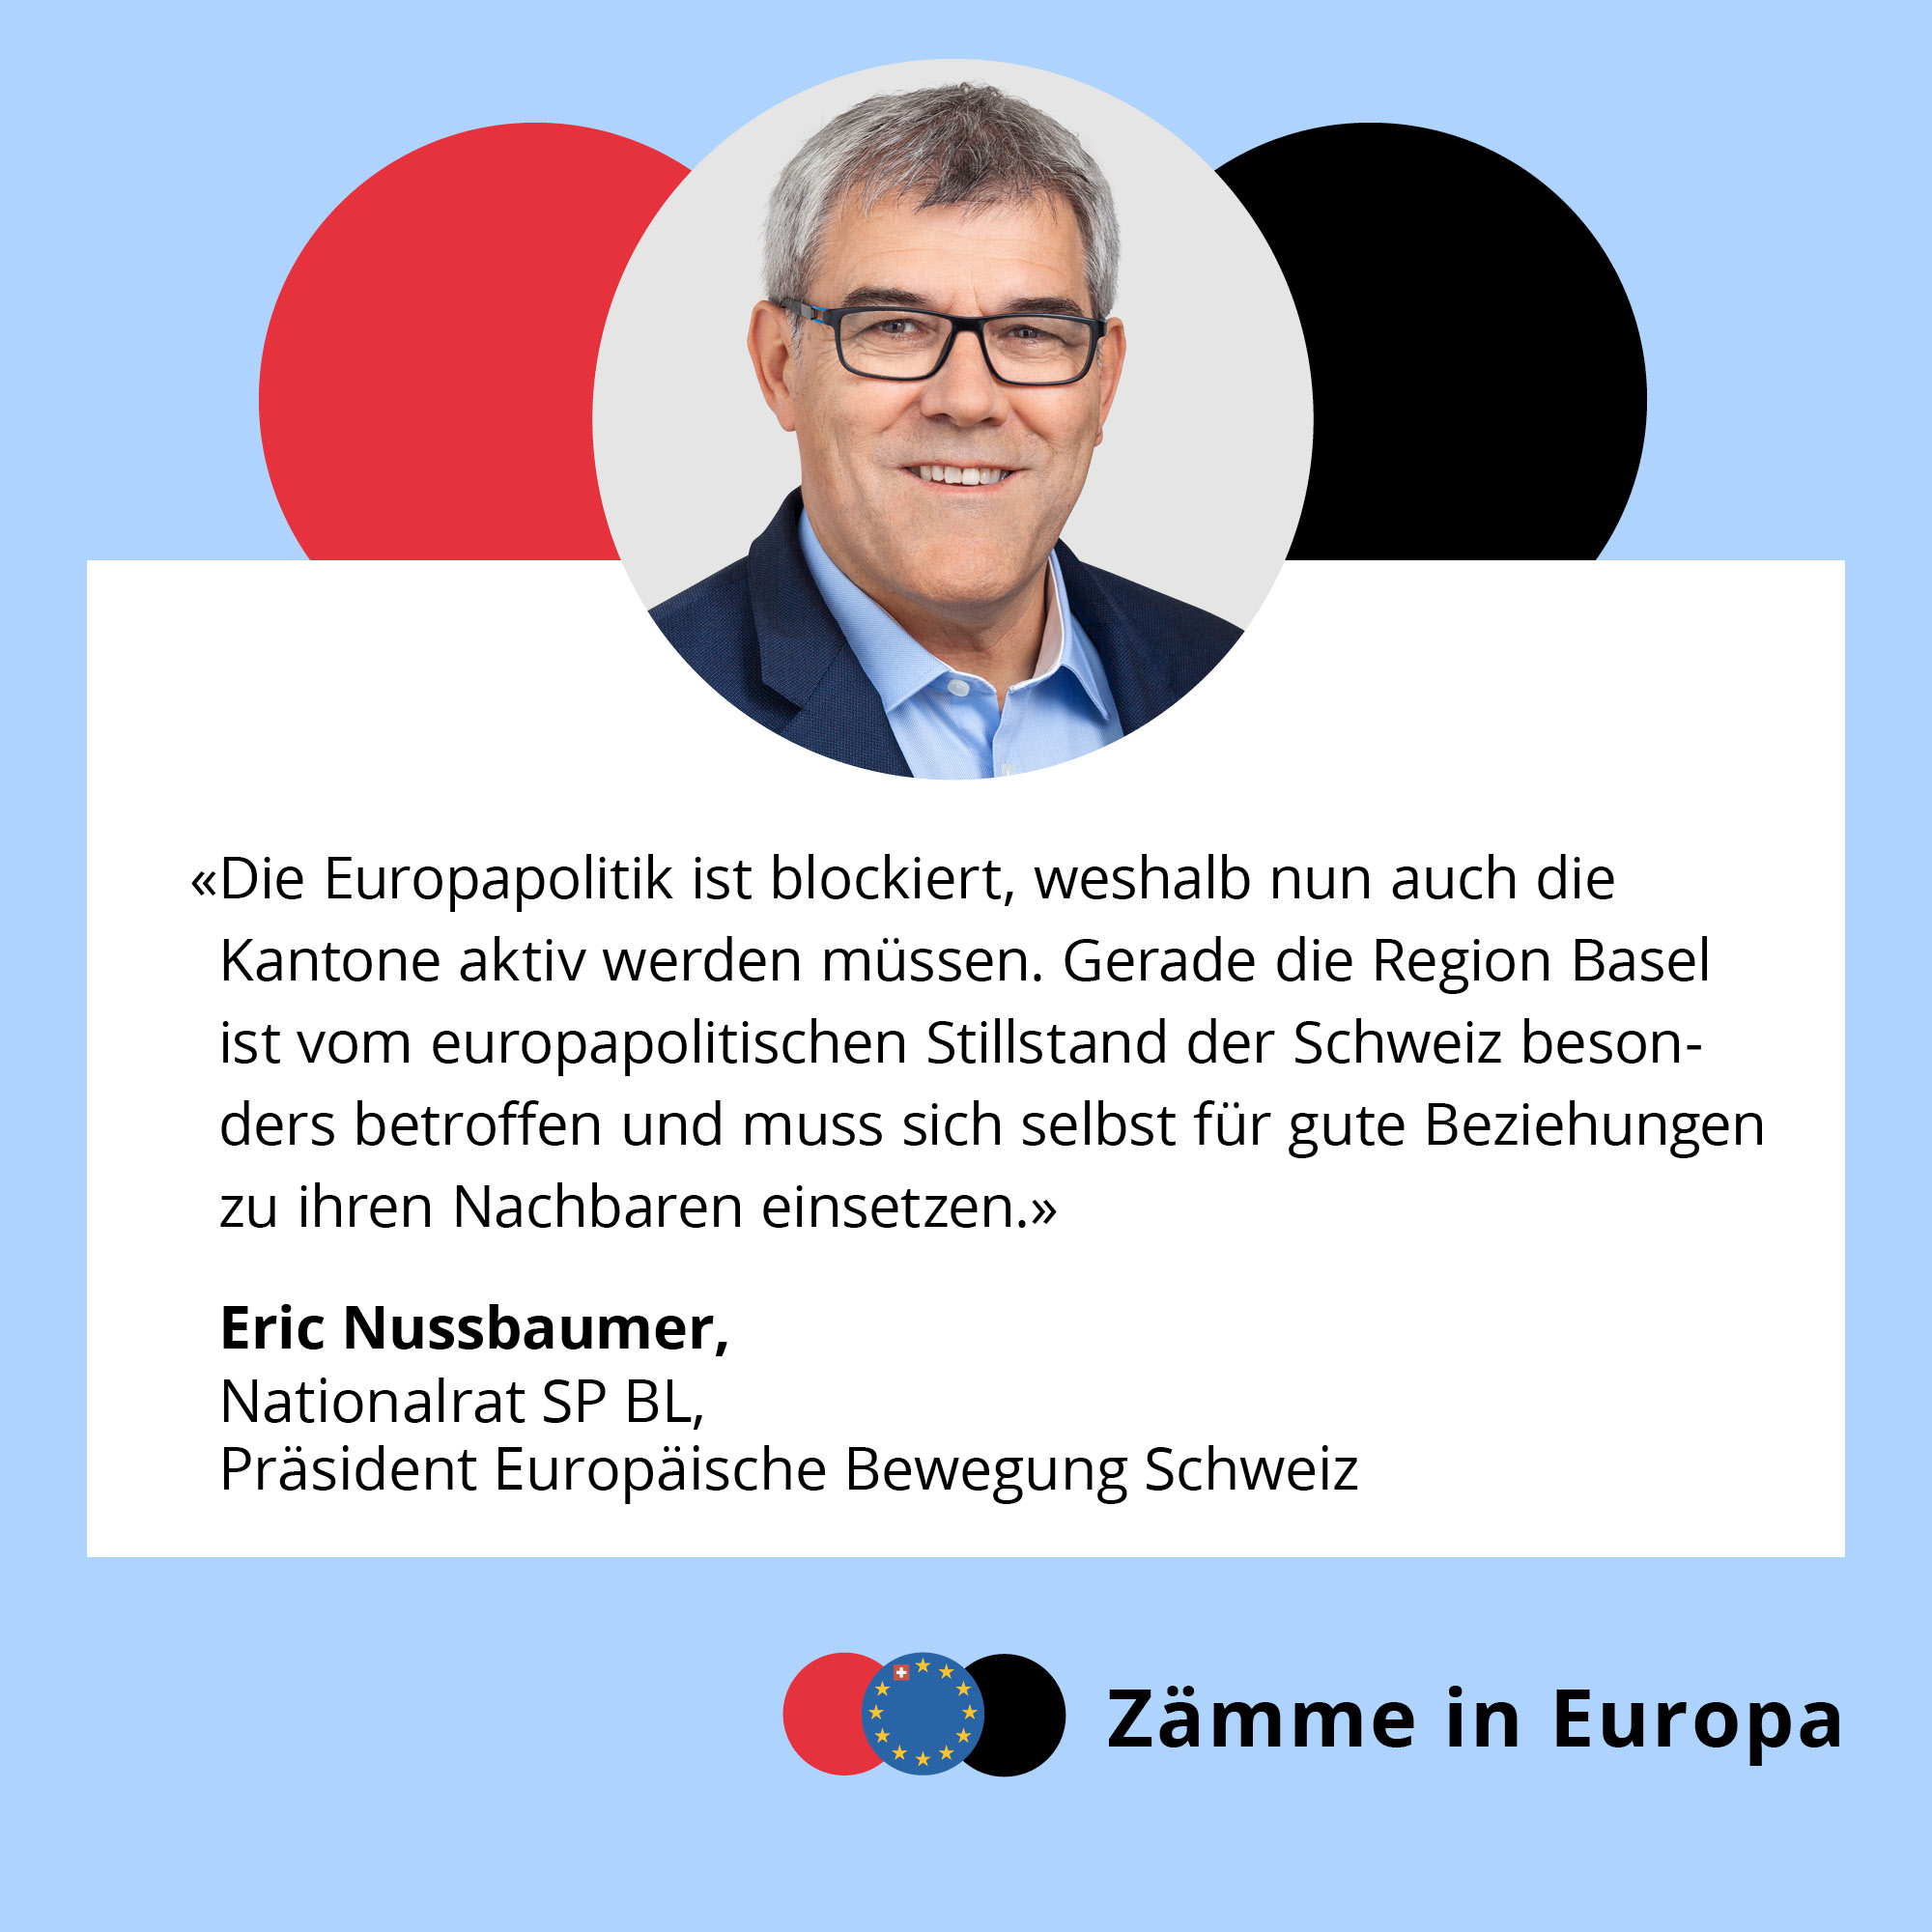 Nussbaumer_Testimonials_Zaemme_in_Europa6